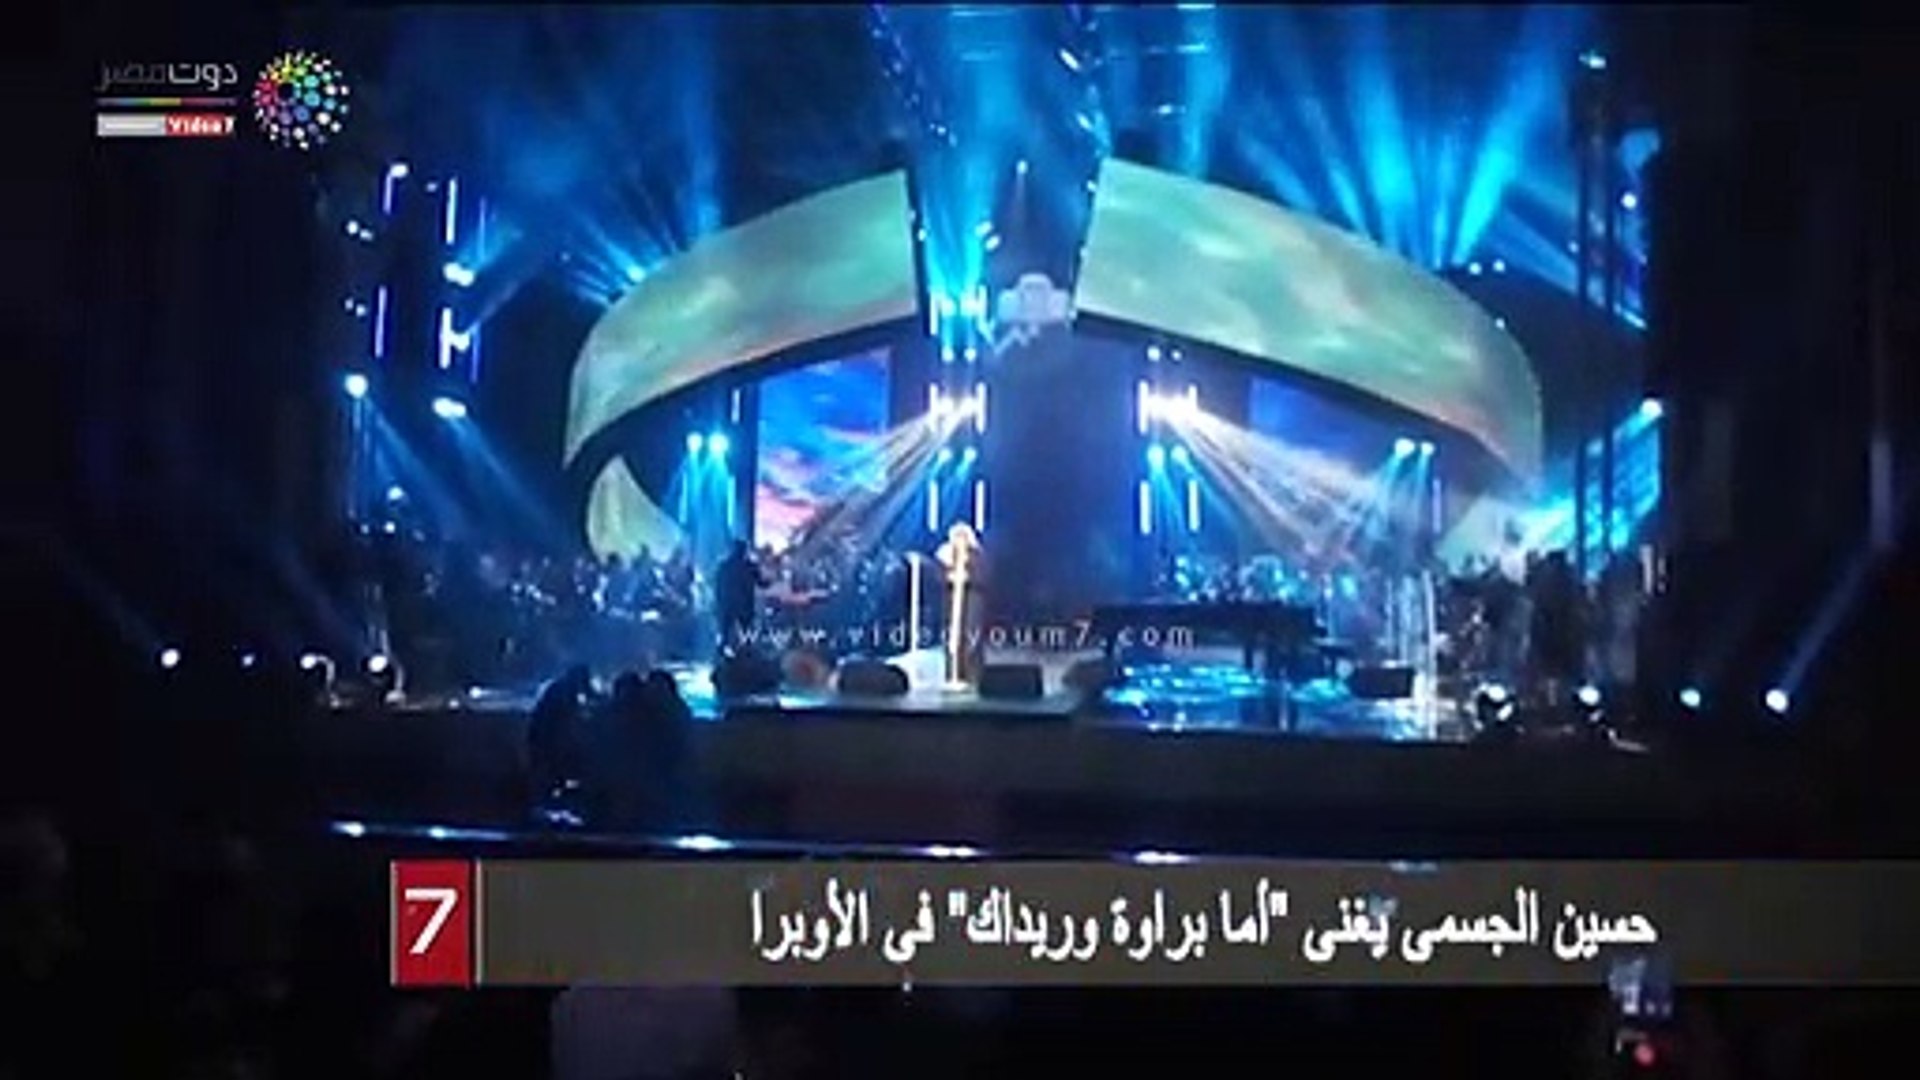 حسين الجسمى يغنى أما براوة وريداك فى الأوبرا فيديو Dailymotion